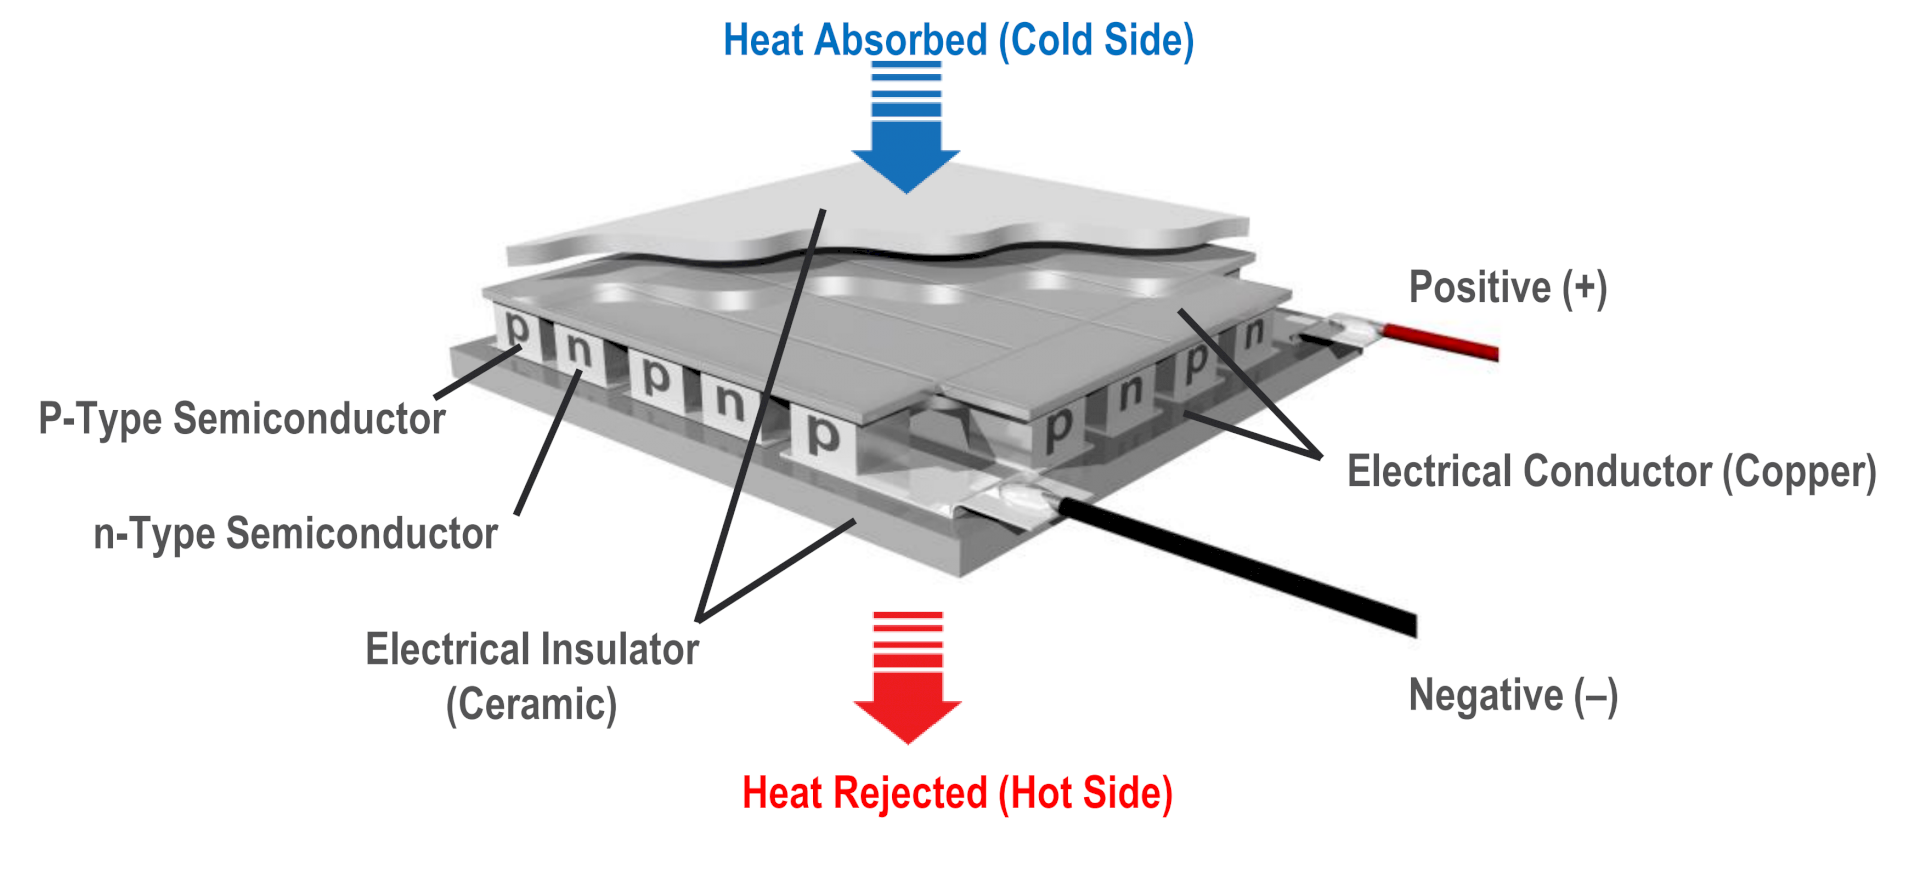 Kijk de replay van het webinar over Thermal Electric Coolers van Norbert Engelberts, thermisch expert